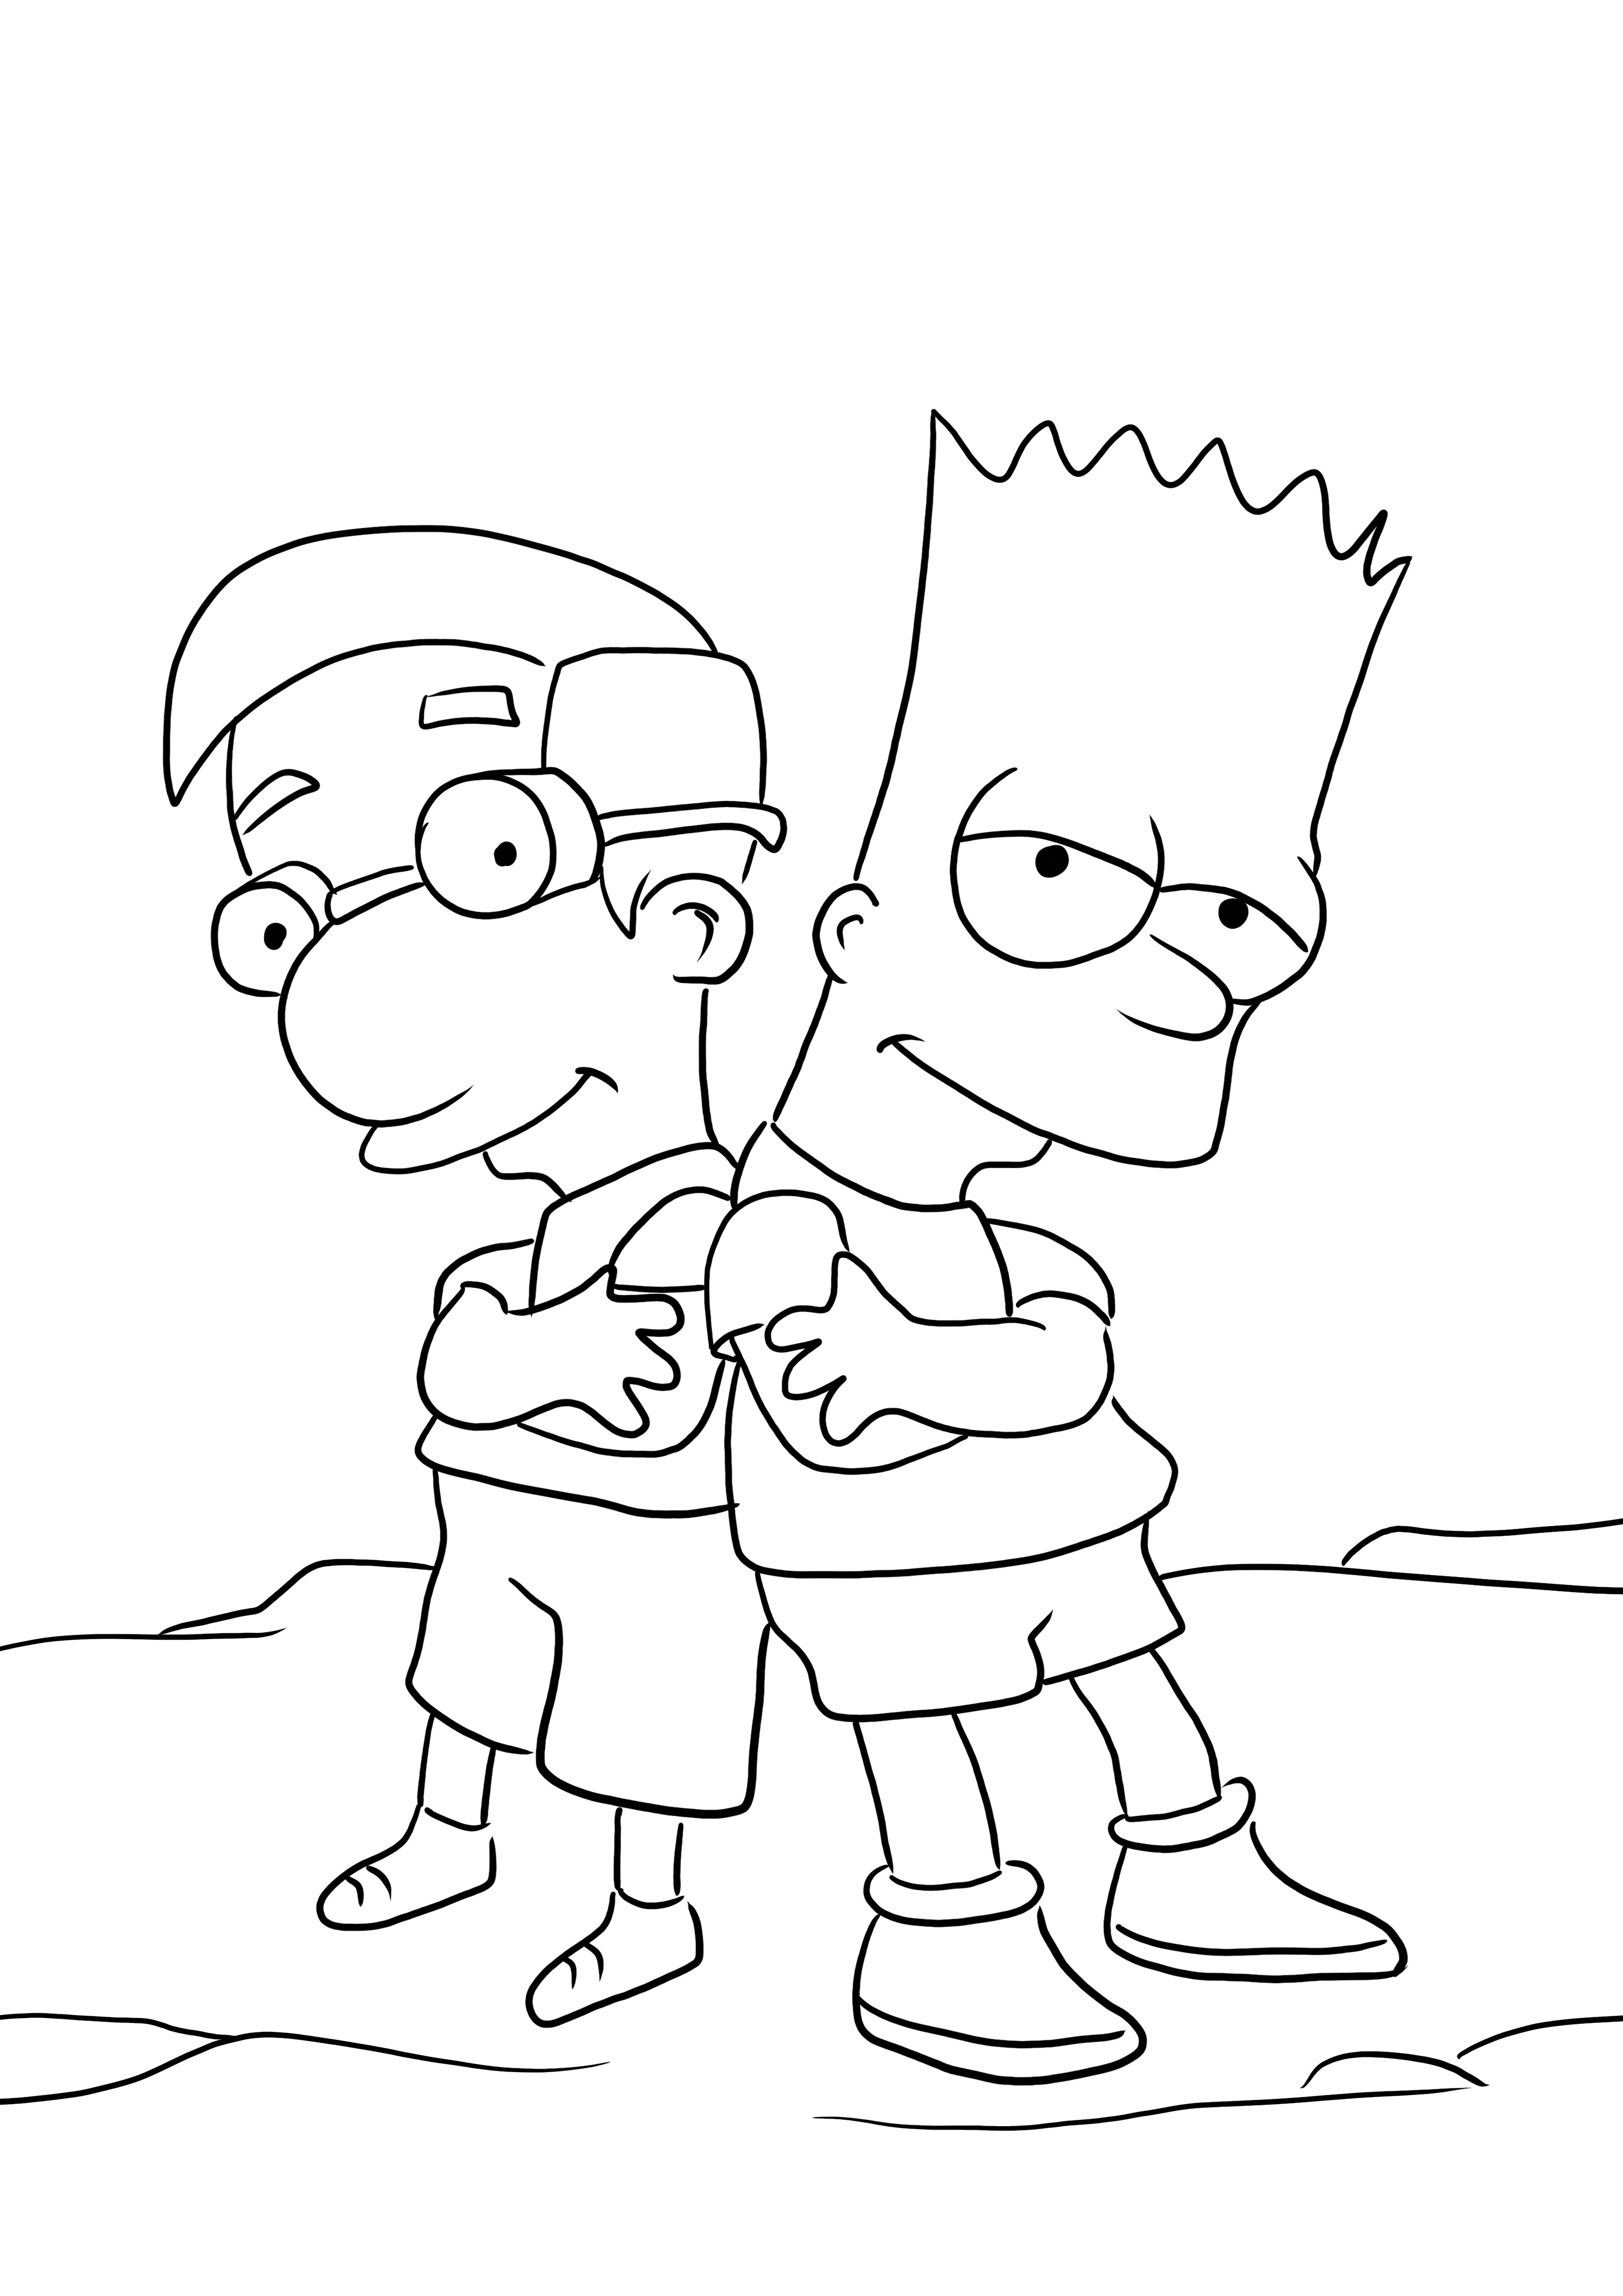 Bart en Millhouse om in te kleuren en gratis een afbeelding te downloaden kleurplaat